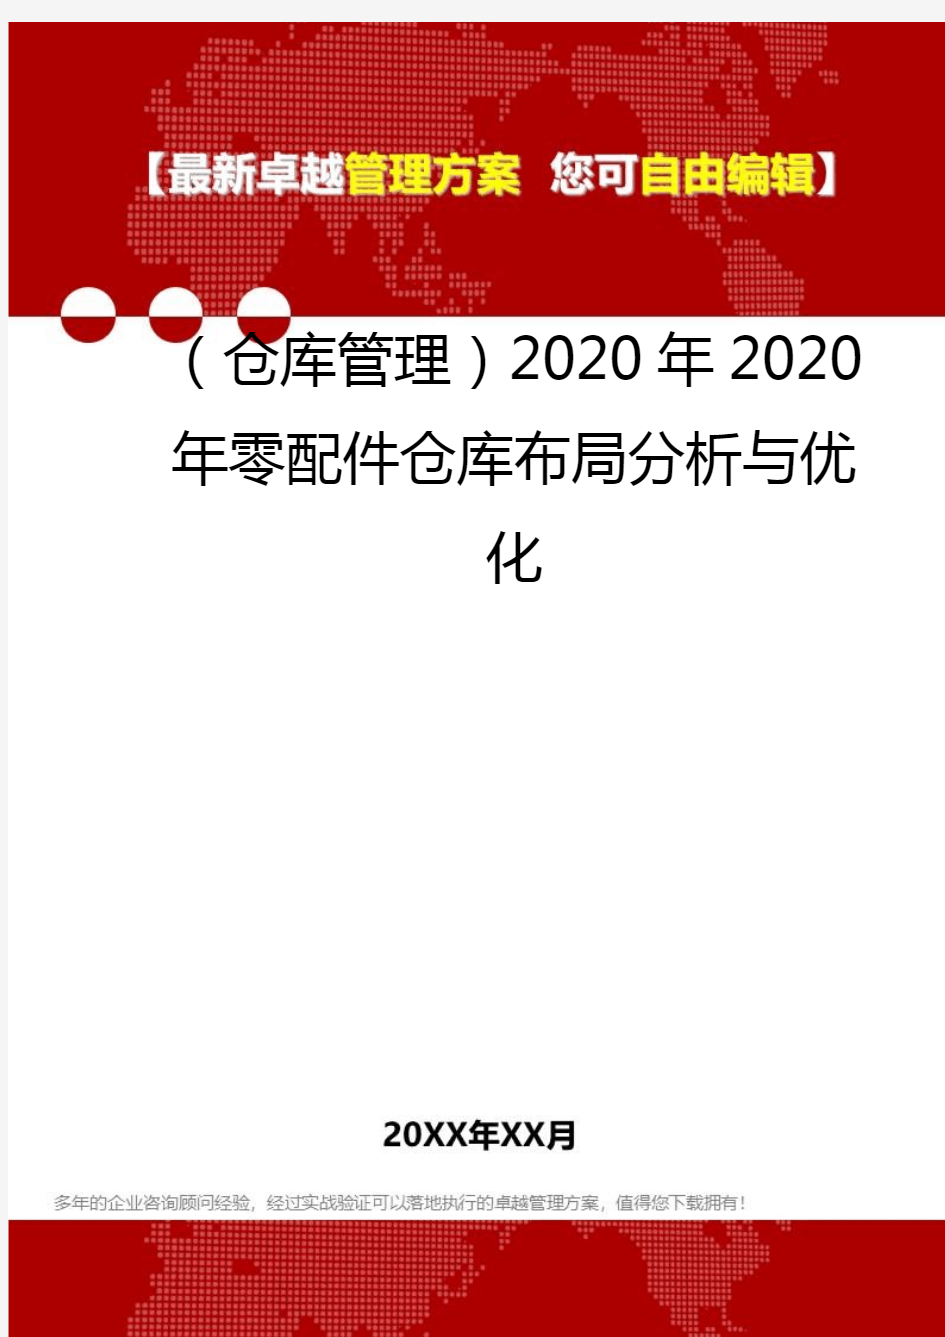 2020(仓库管理)2020年2020年零配件仓库布局分析与优化